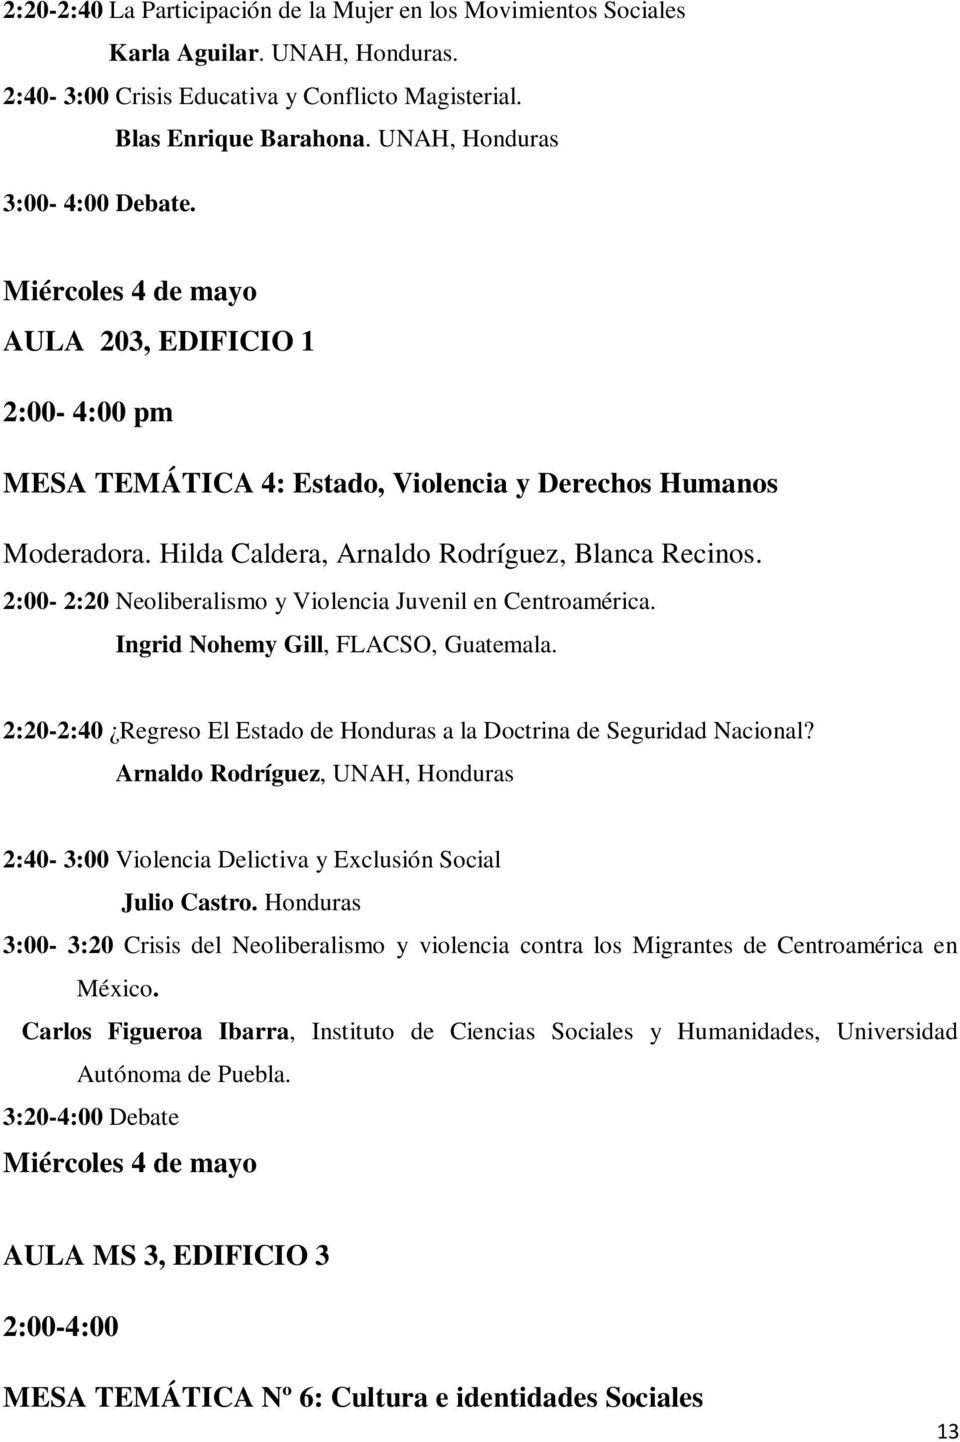 Hilda Caldera, Arnaldo Rodríguez, Blanca Recinos. 2:00-2:20 Neoliberalismo y Violencia Juvenil en Centroamérica. Ingrid Nohemy Gill, FLACSO, Guatemala.